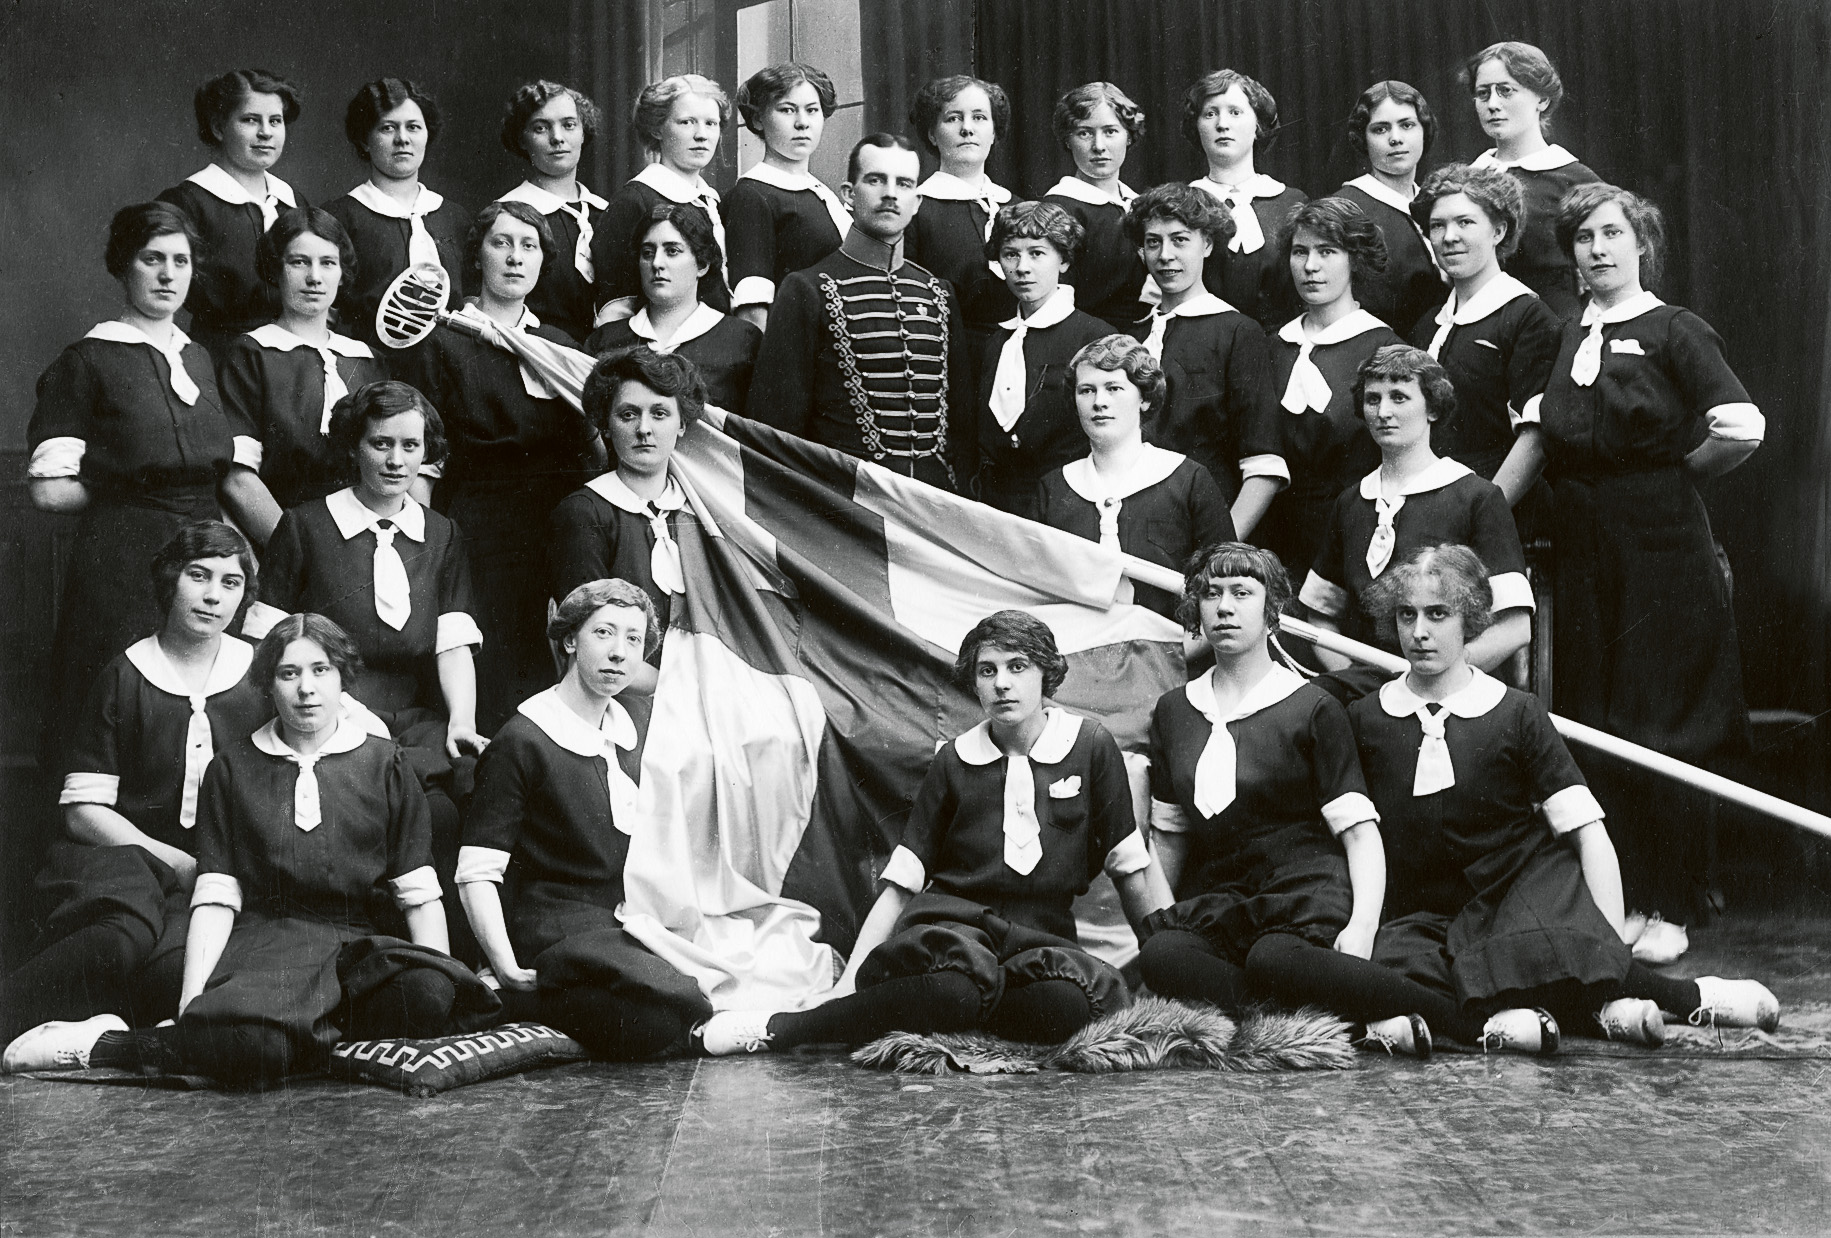 Helsingborgs kvinnliga gymnastikklubb med sin ledare, fanjunkare Oscar Strand 1914